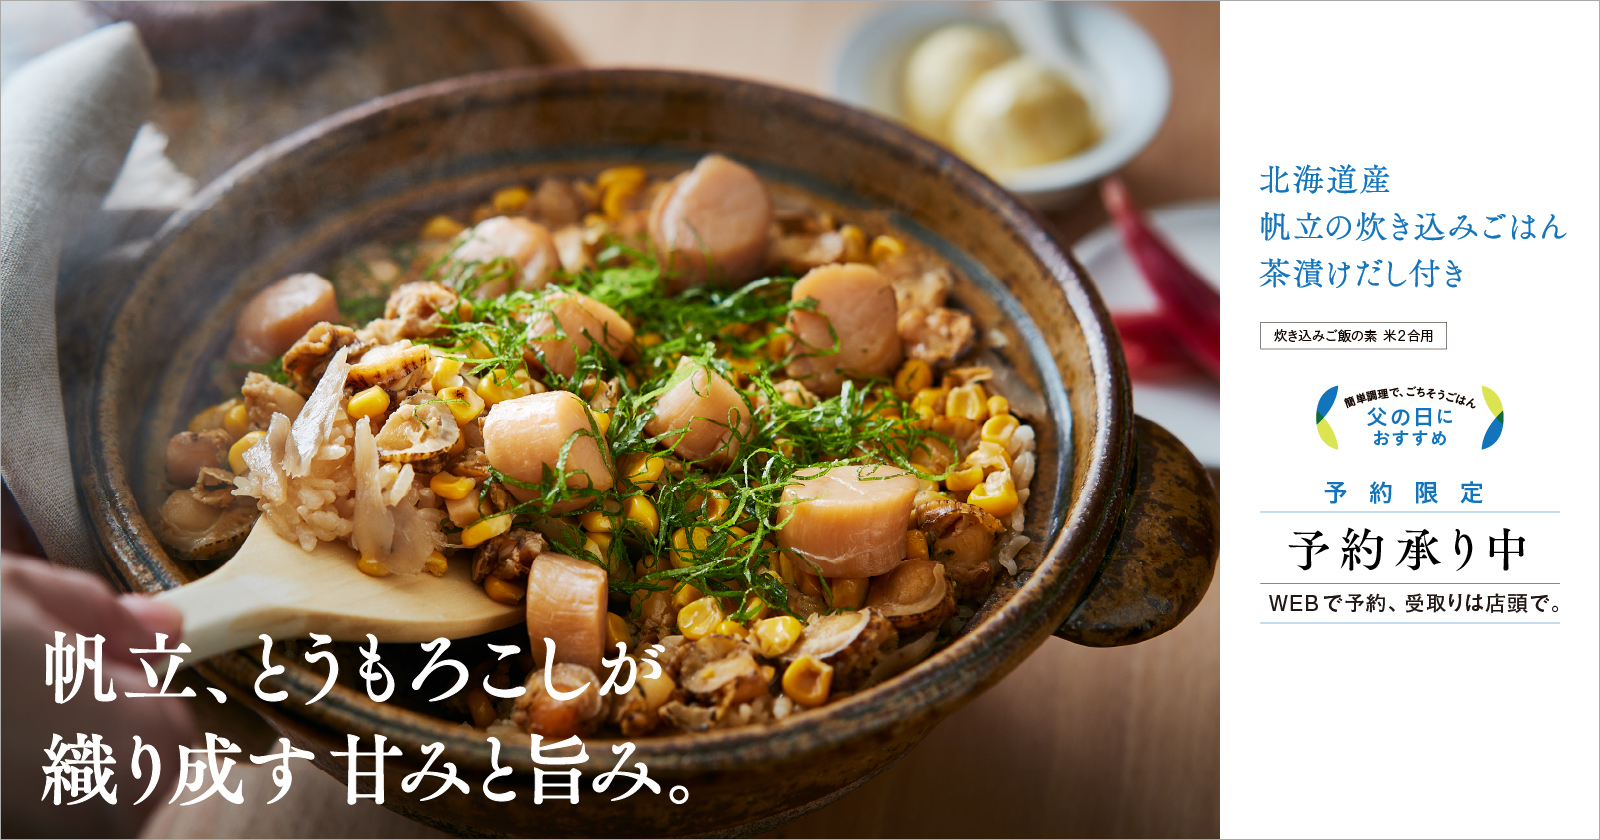 北海道産ほっき貝と帆立の炊き込みご飯 炊き込みご飯の素 米2合用 簡単調理で、ごちそうごはん 母の日におすすめ 予約限定 予約承り中 WEBで予約、受取りは店舗で。